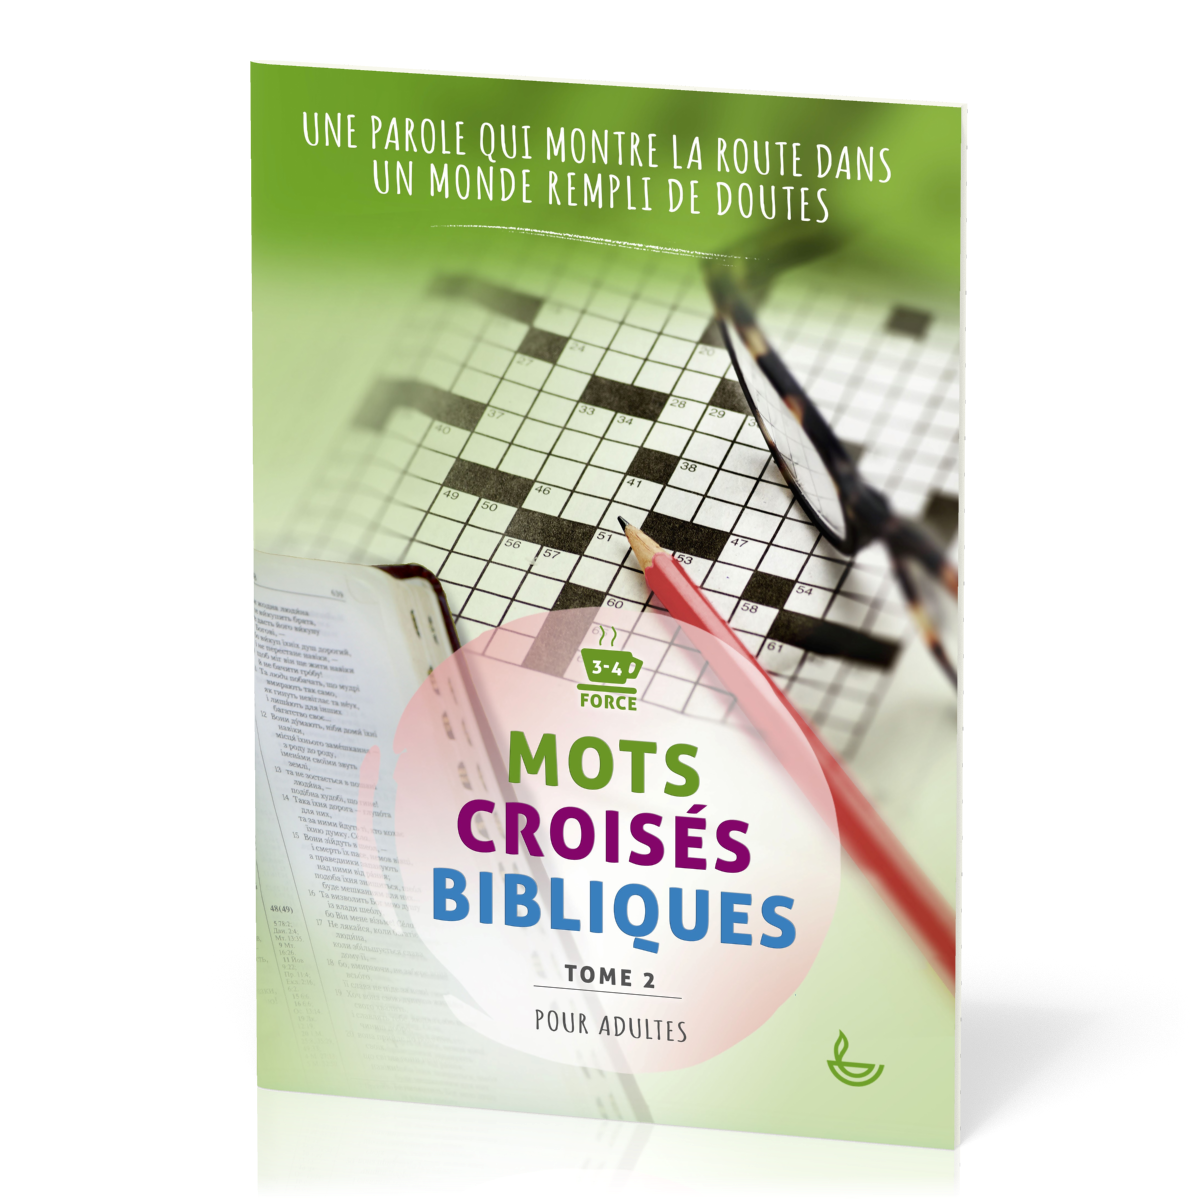 Mots croisés bibliques, tome 2 - Une Parole qui montre la route dans un monde rempli de doutes